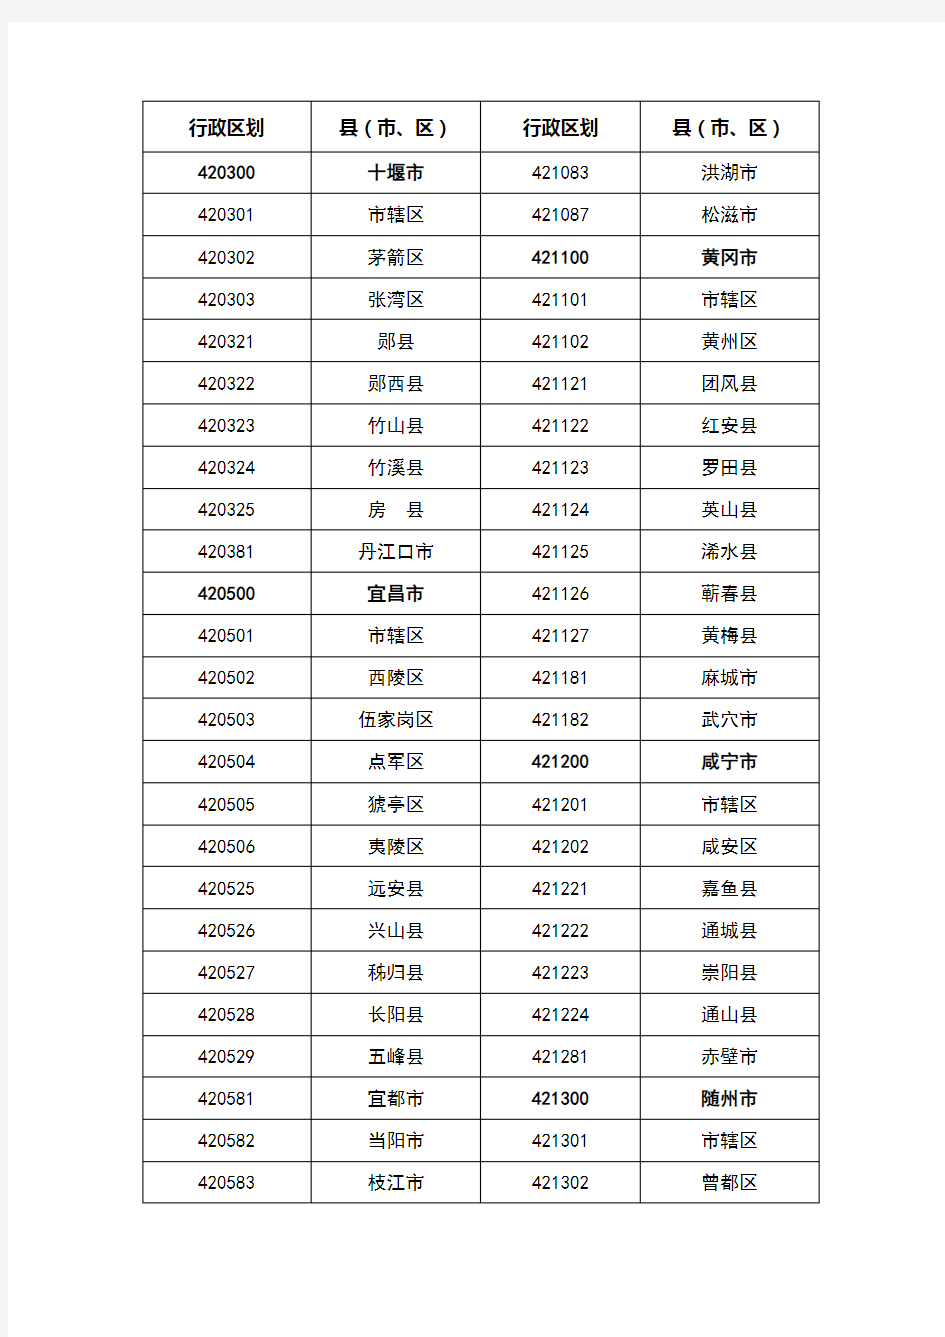 湖北省行政区划代码